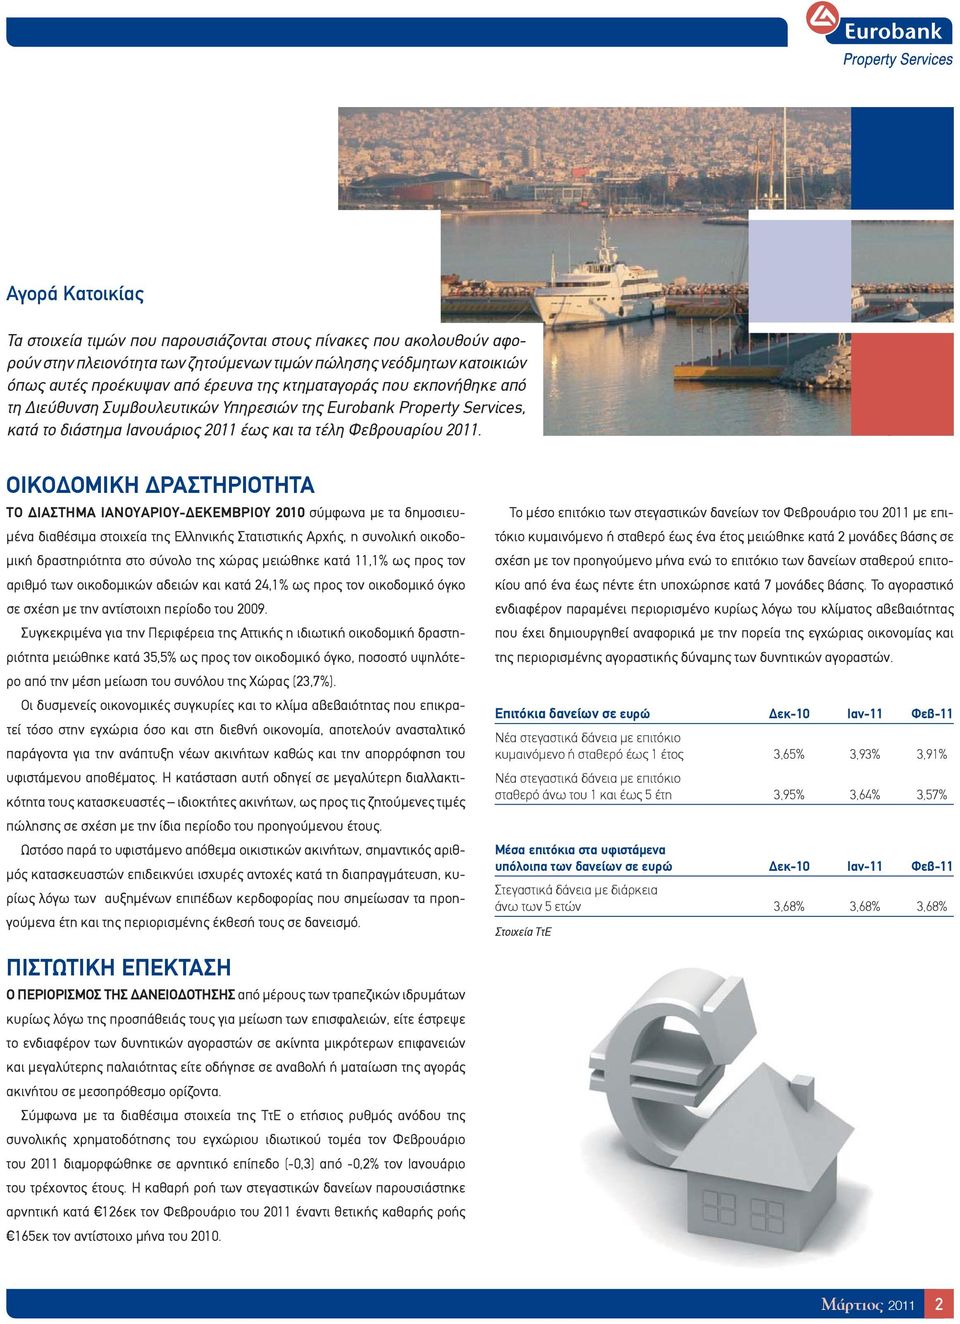 ΟΙΚΟΔΟΜΙΚΗ ΔΡΑΣΤΗΡΙΟΤΗΤΑ ΤΟ ΔΙΑΣΤΗΜΑ ΙΑΝΟΥΑΡΙΟΥ-ΔΕΚΕΜΒΡΙΟΥ 2010 σύμφωνα με τα δημοσιευμένα διαθέσιμα στοιχεία της Ελληνικής Στατιστικής Αρχής, η συνολική οικοδομική δραστηριότητα στο σύνολο της χώρας